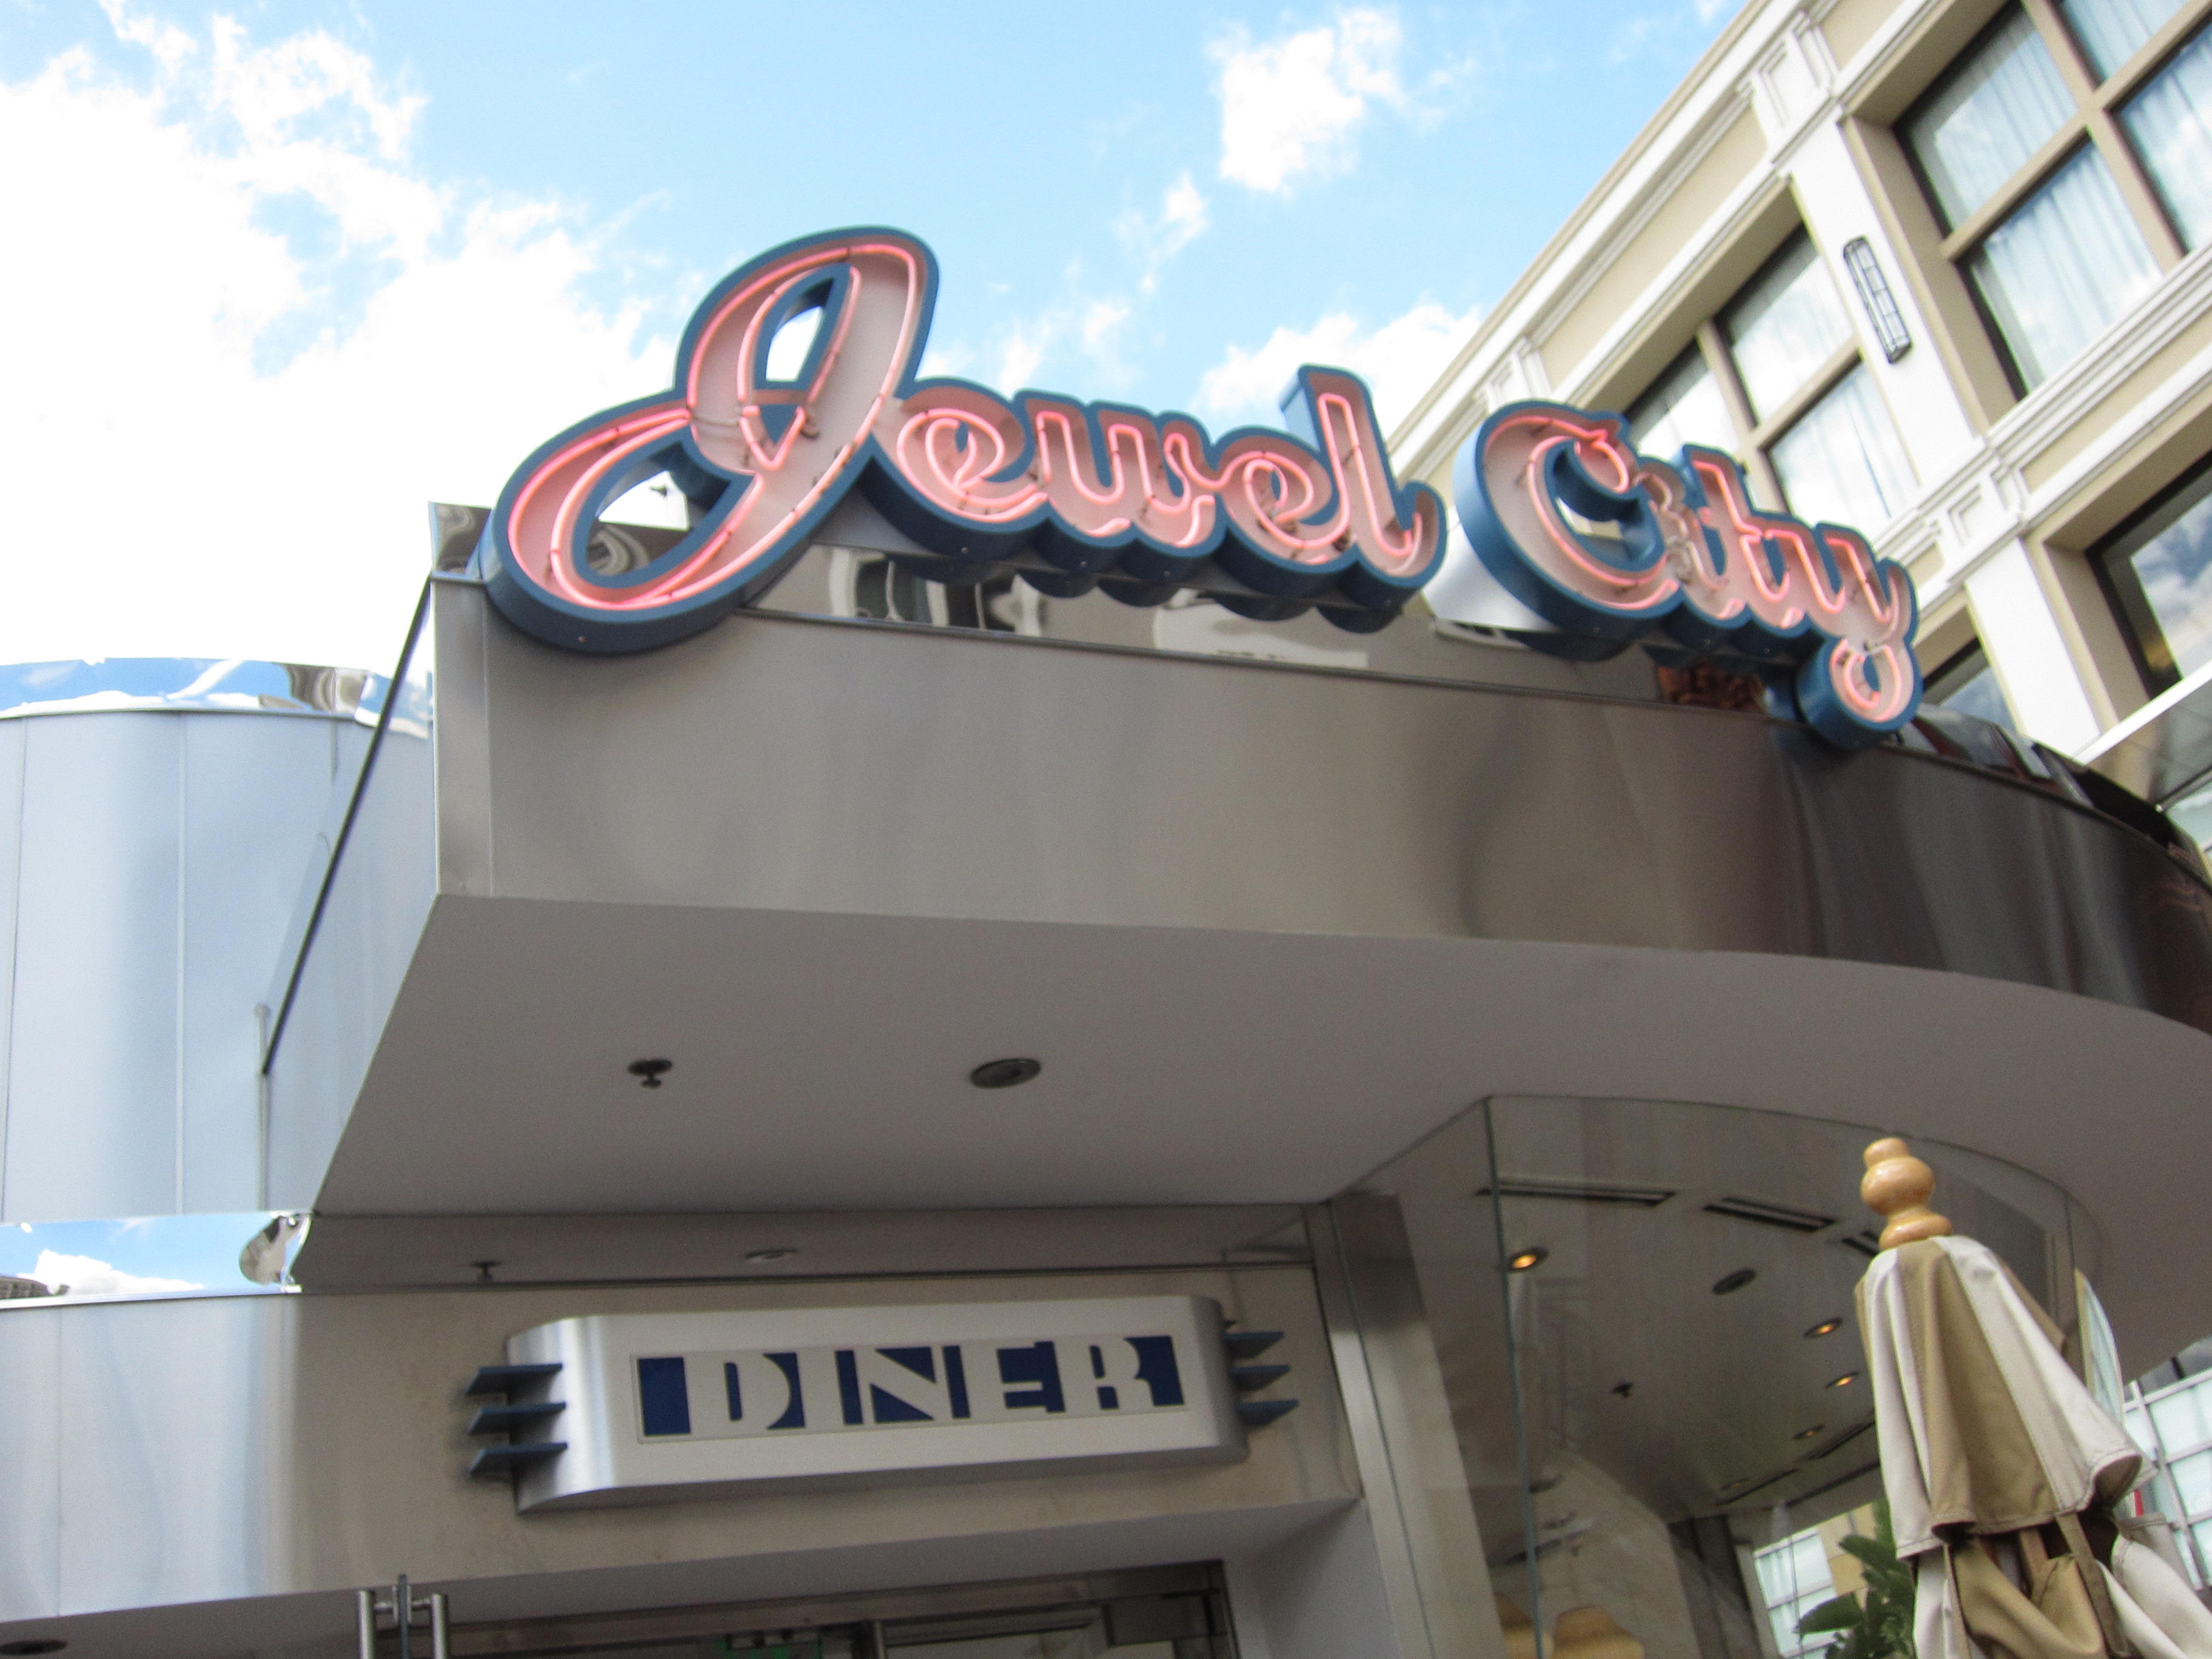 Jewel City Diner